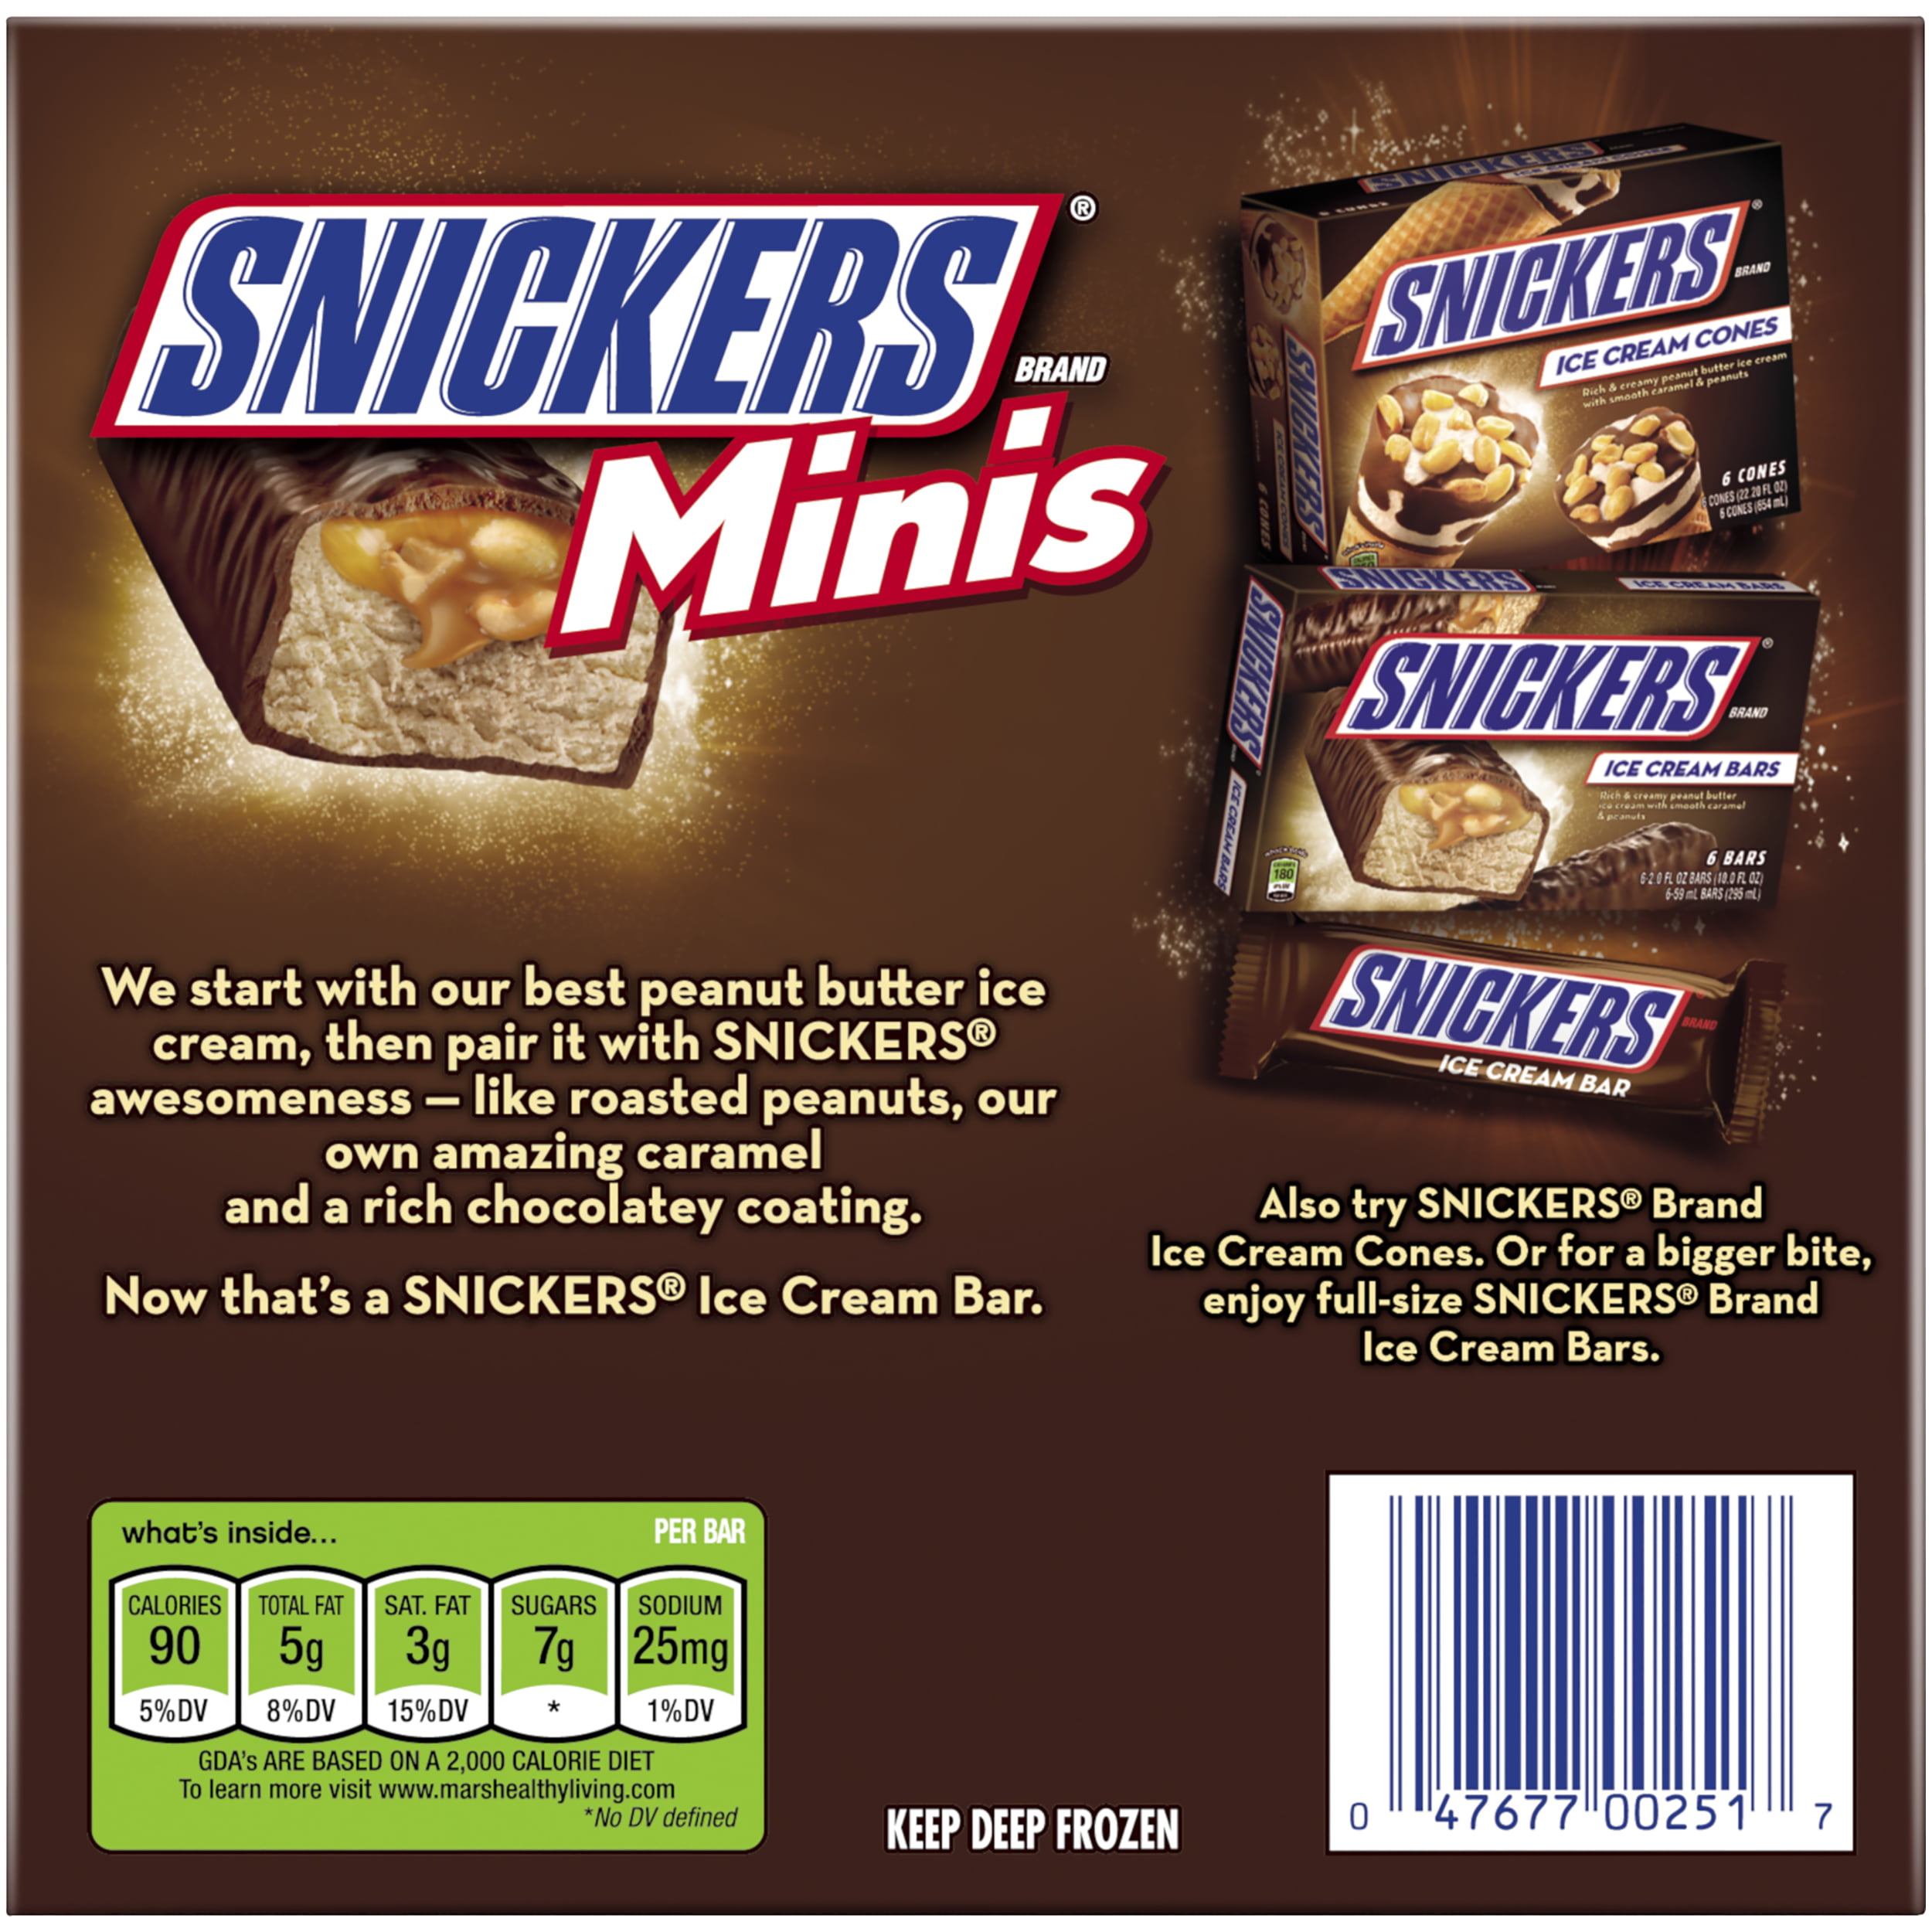 Сникерс ввести код с упаковки. Сникерс Минис вес 1. Snickers Mini вес 1 шт. Сникерс вес 1 батончика. Сникерс Минис вес 1 конфеты.